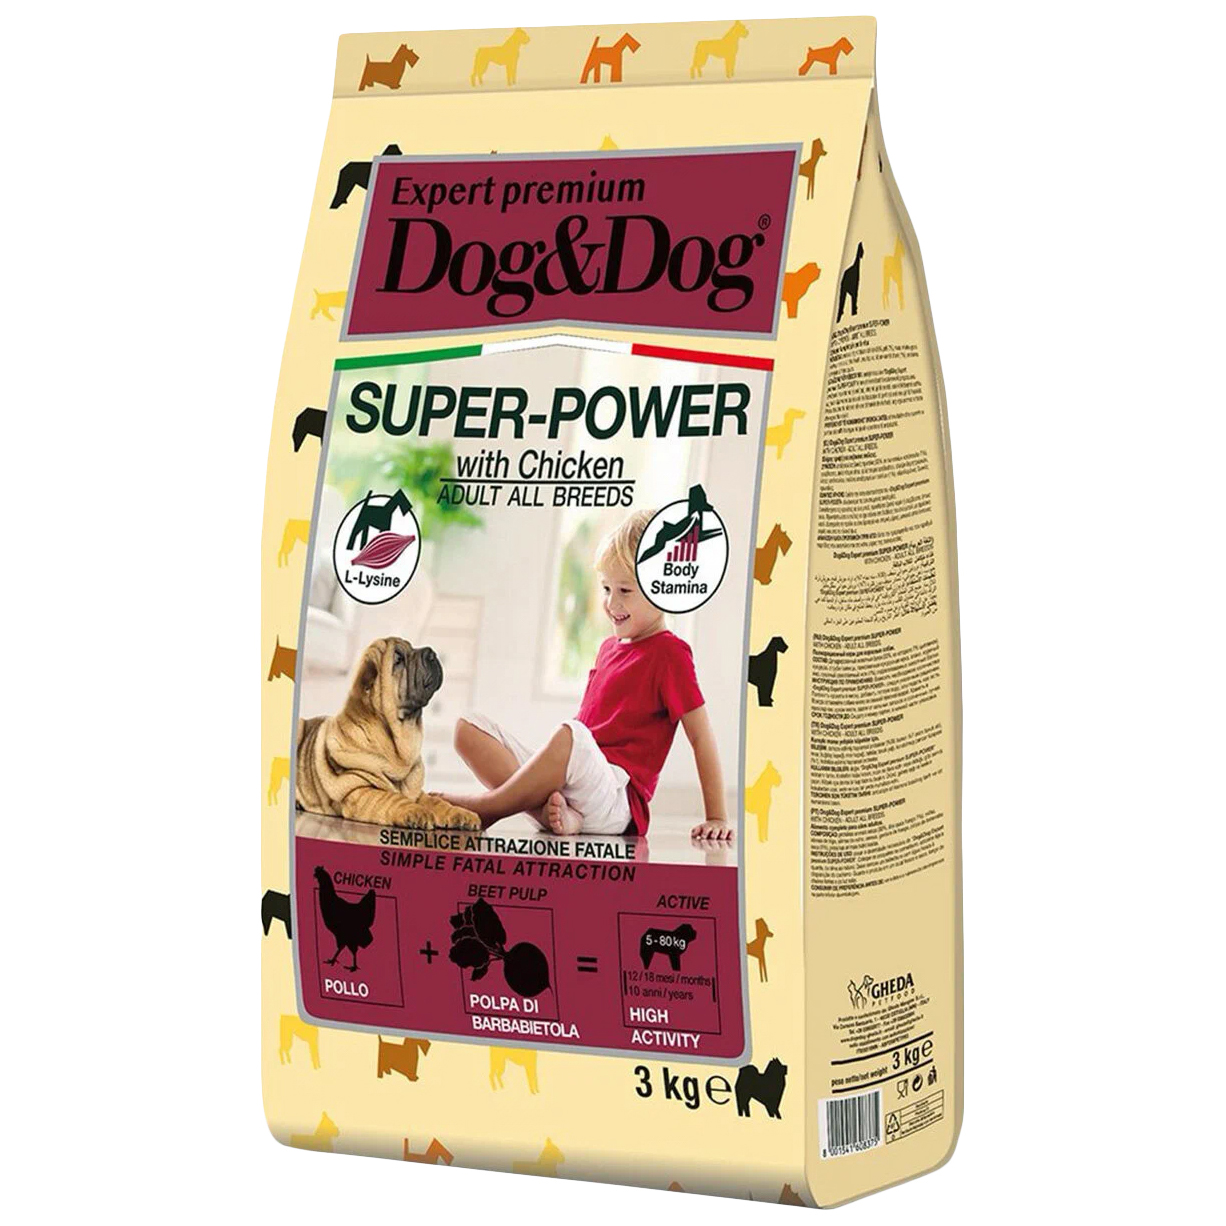 Сухой корм Dog & Dog Super-Power для взрослых и активных собак, с курицей, 3 кг